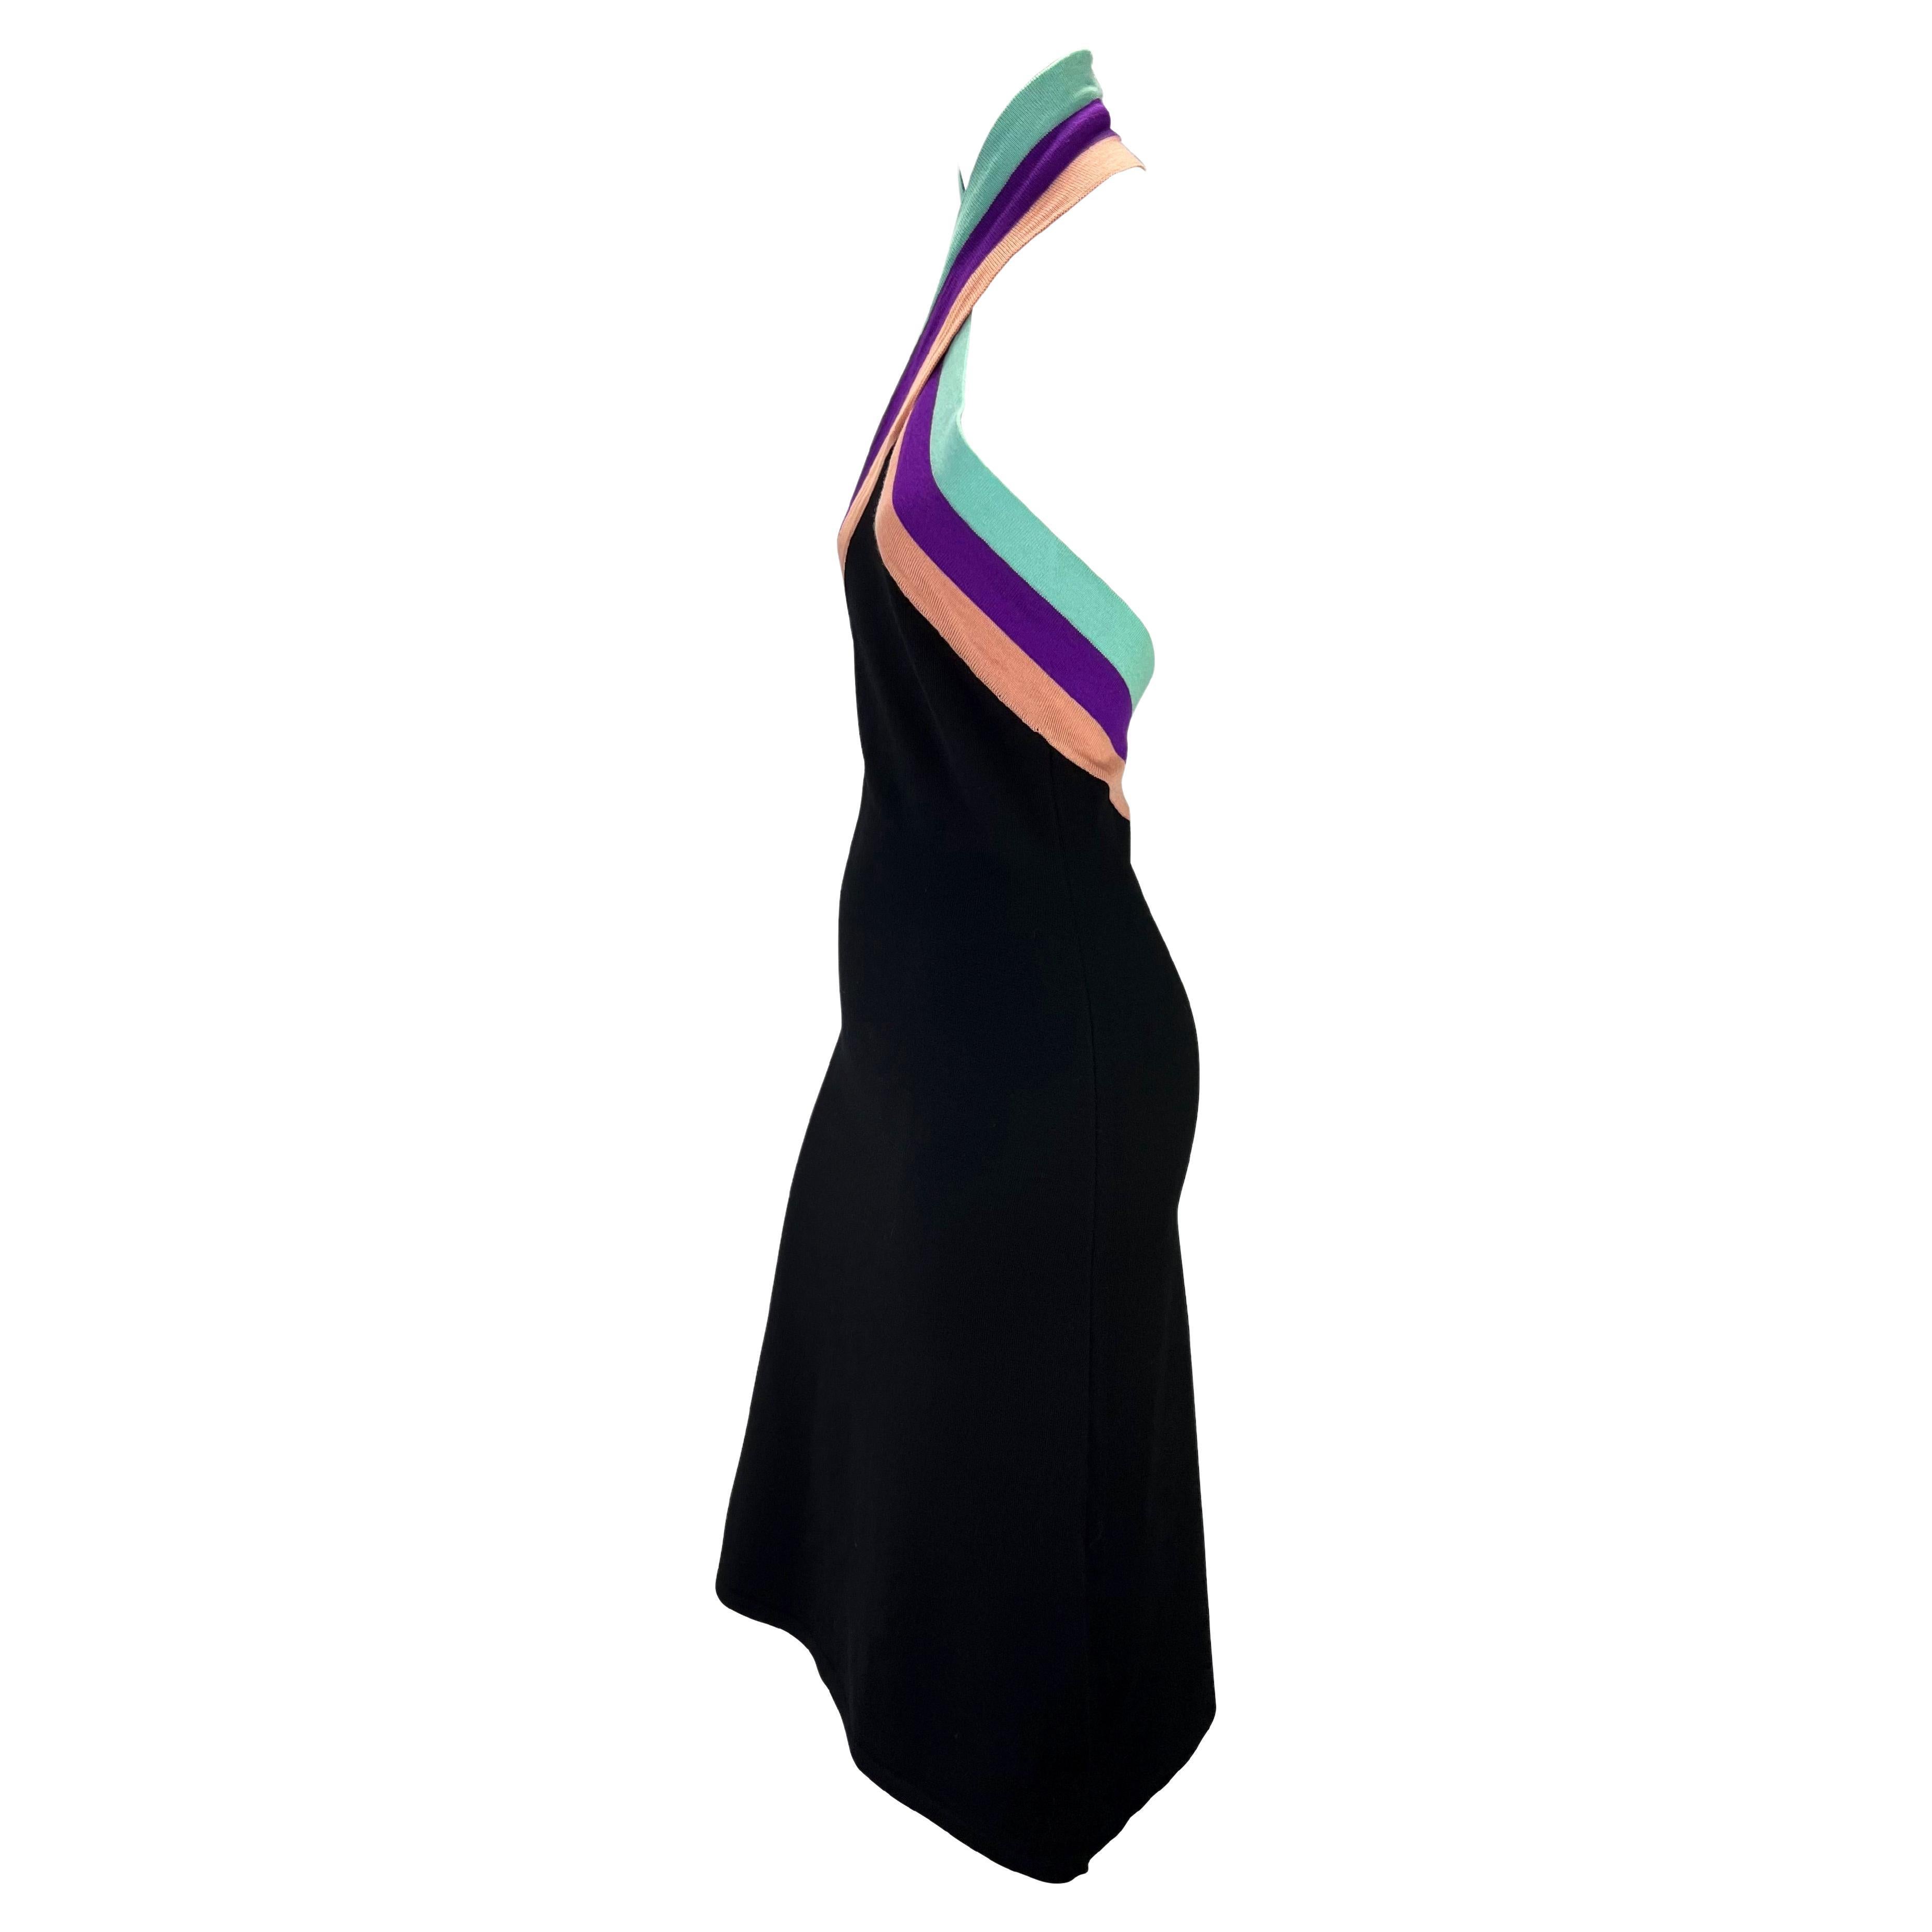 Présentation d'une robe dos nu en maille extensible moulante conçue par Donatella pour la collection automne/hiver 2000 de Gianni Versace. L'encolure dos nu croisée est rehaussée d'une rangée de six boutons en strass irisés. Cette robe est une